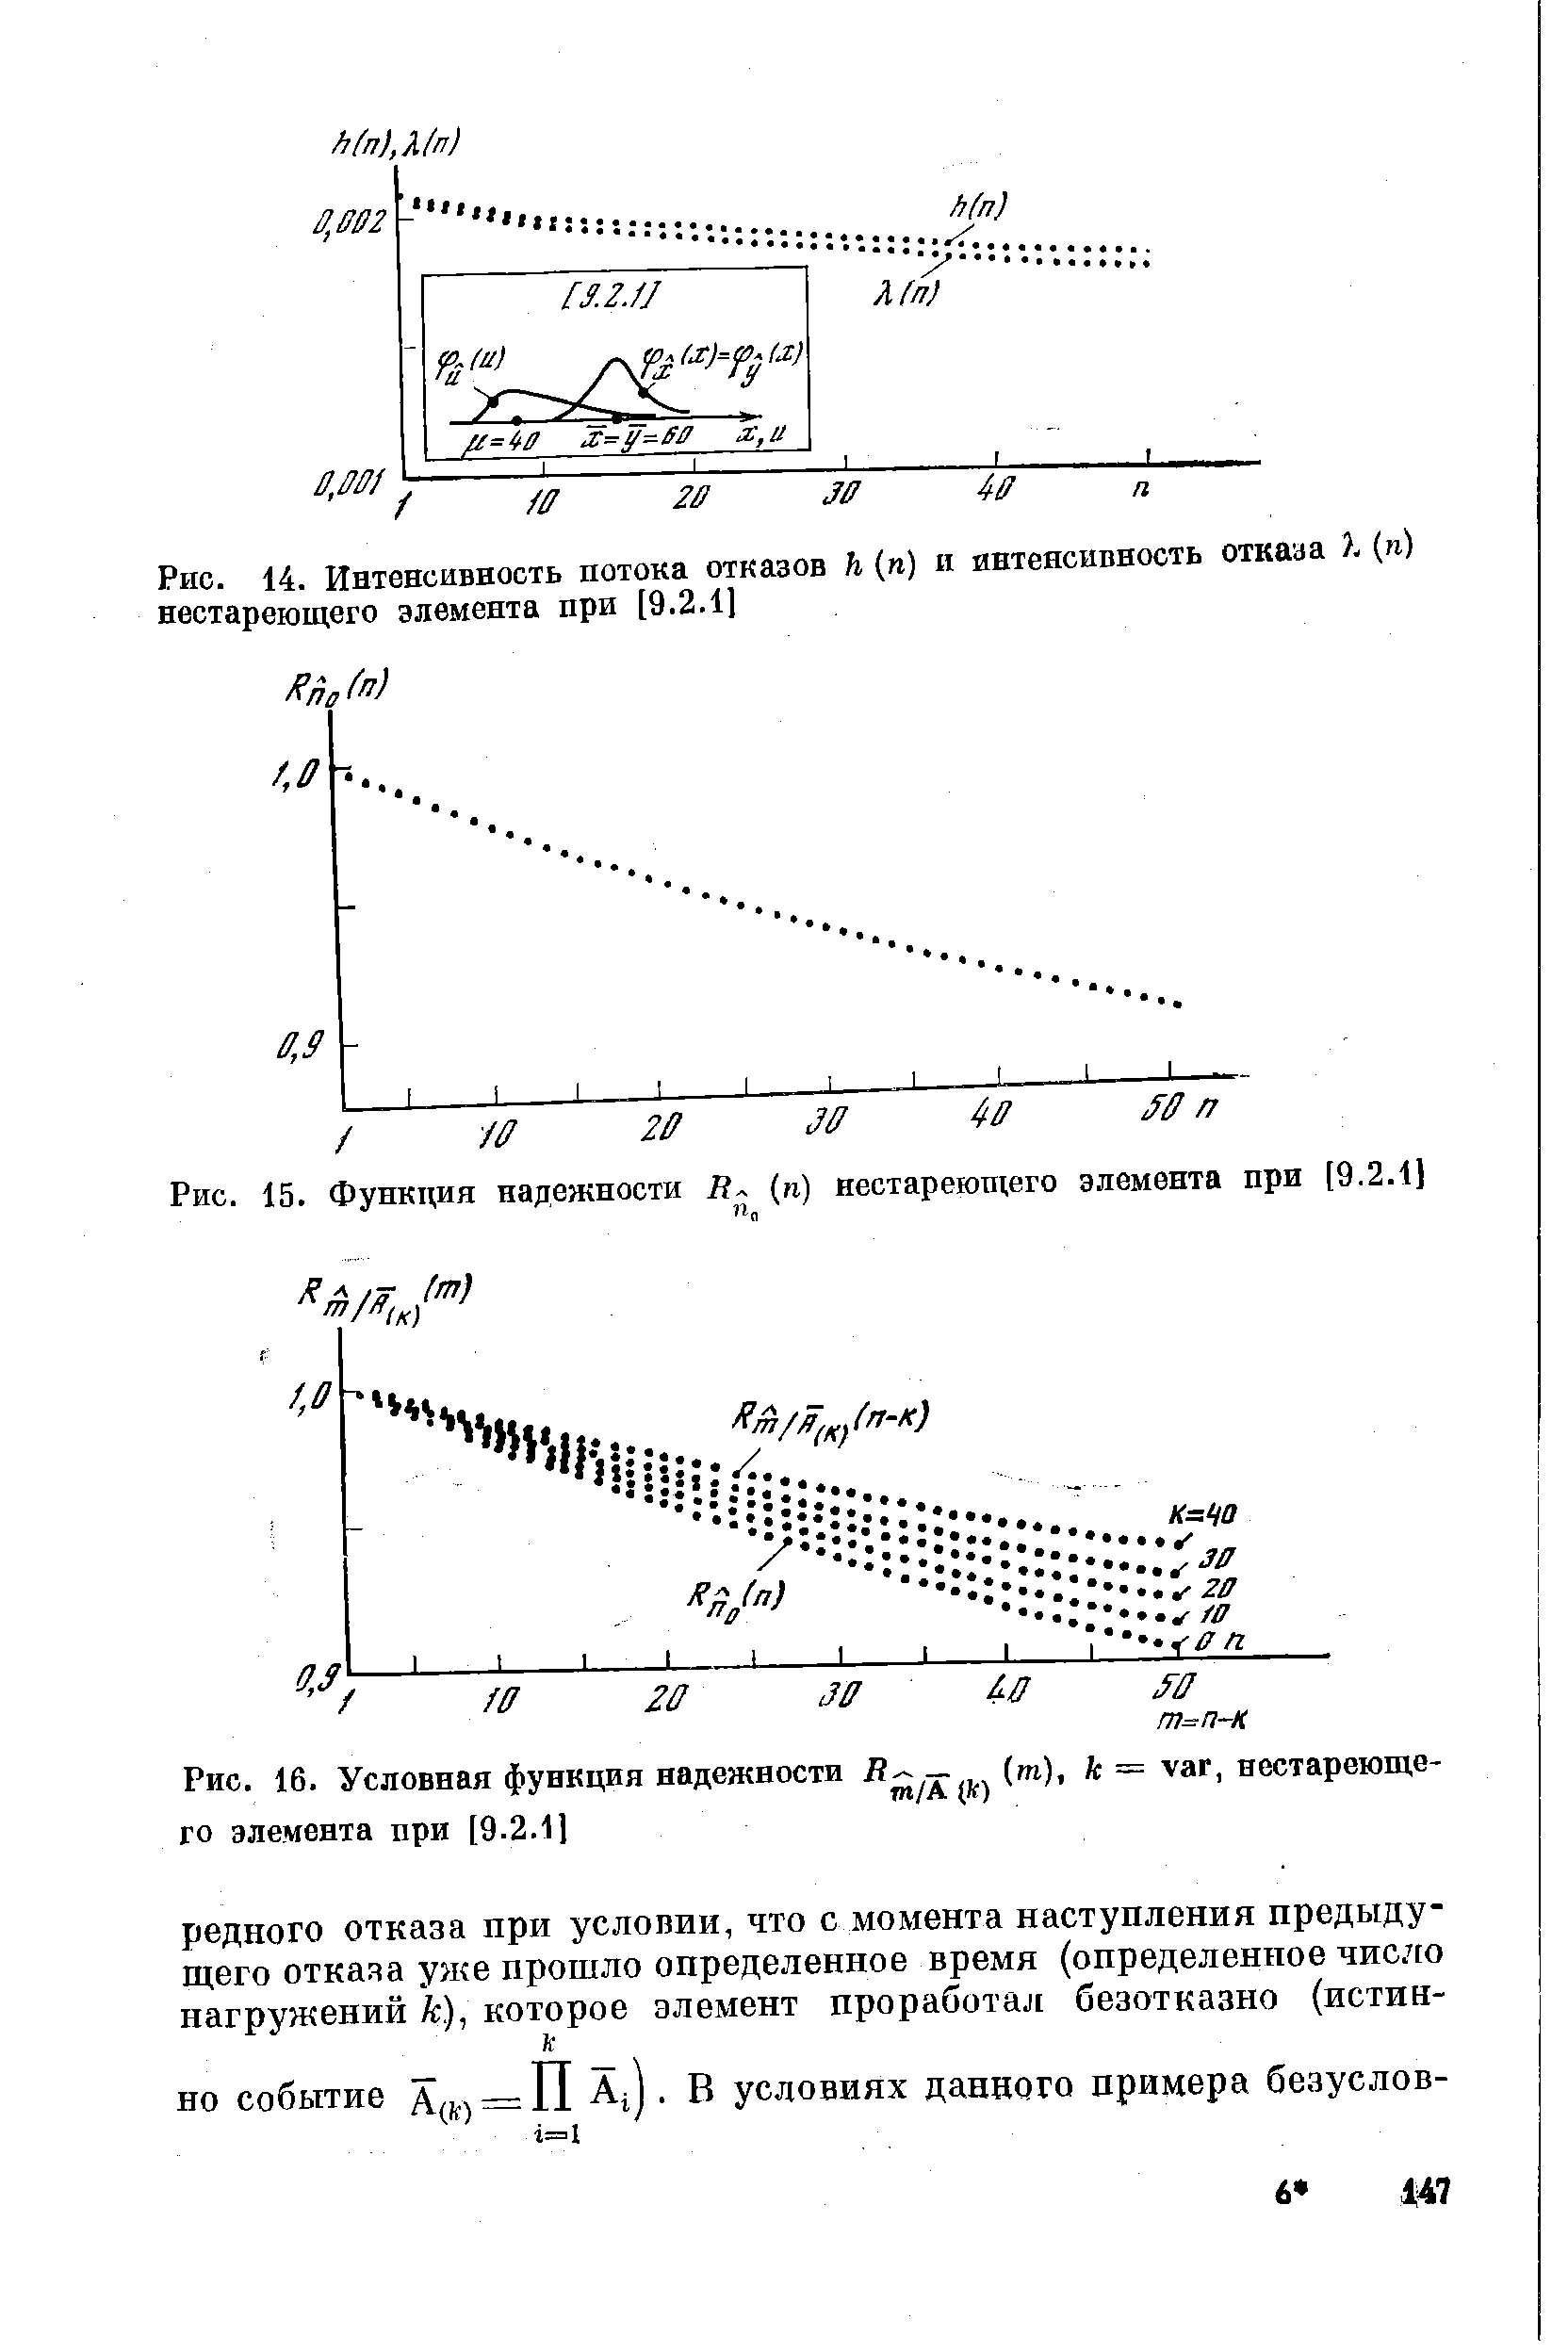 Рис. 15. Функция надежности (м) нестареющего элемента при [9.2.11
